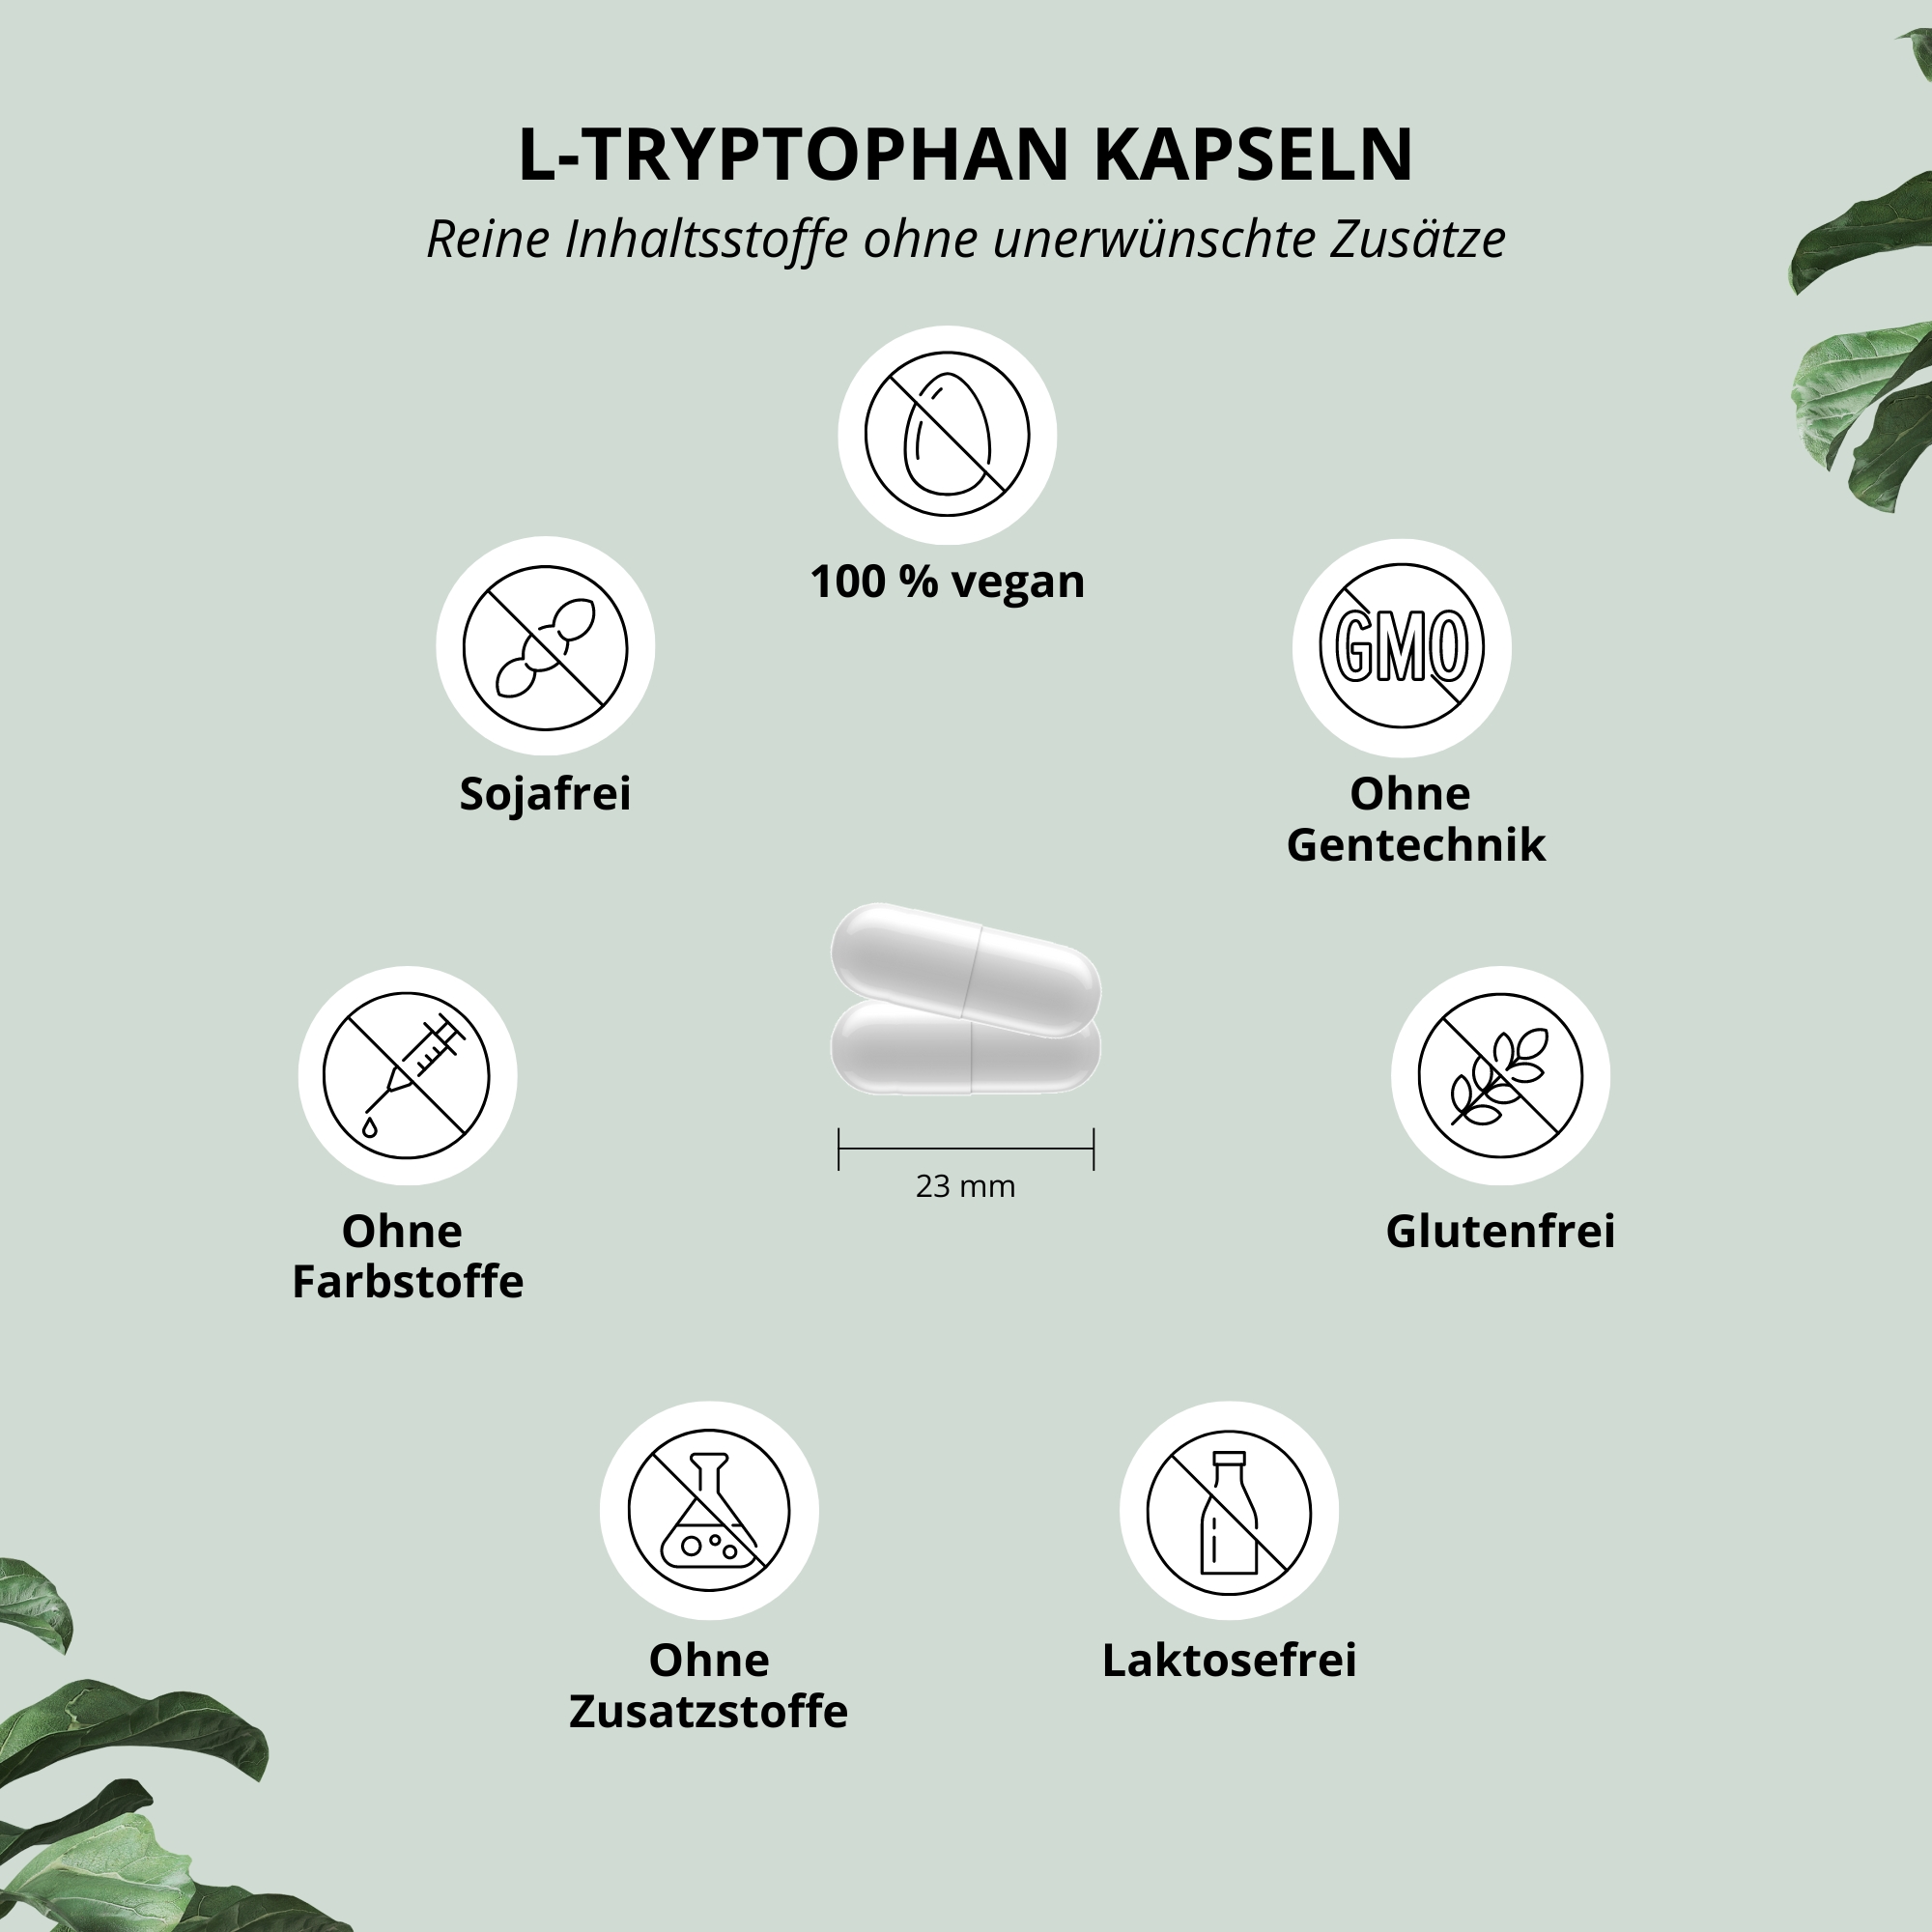 L-Tryptophan Kapseln